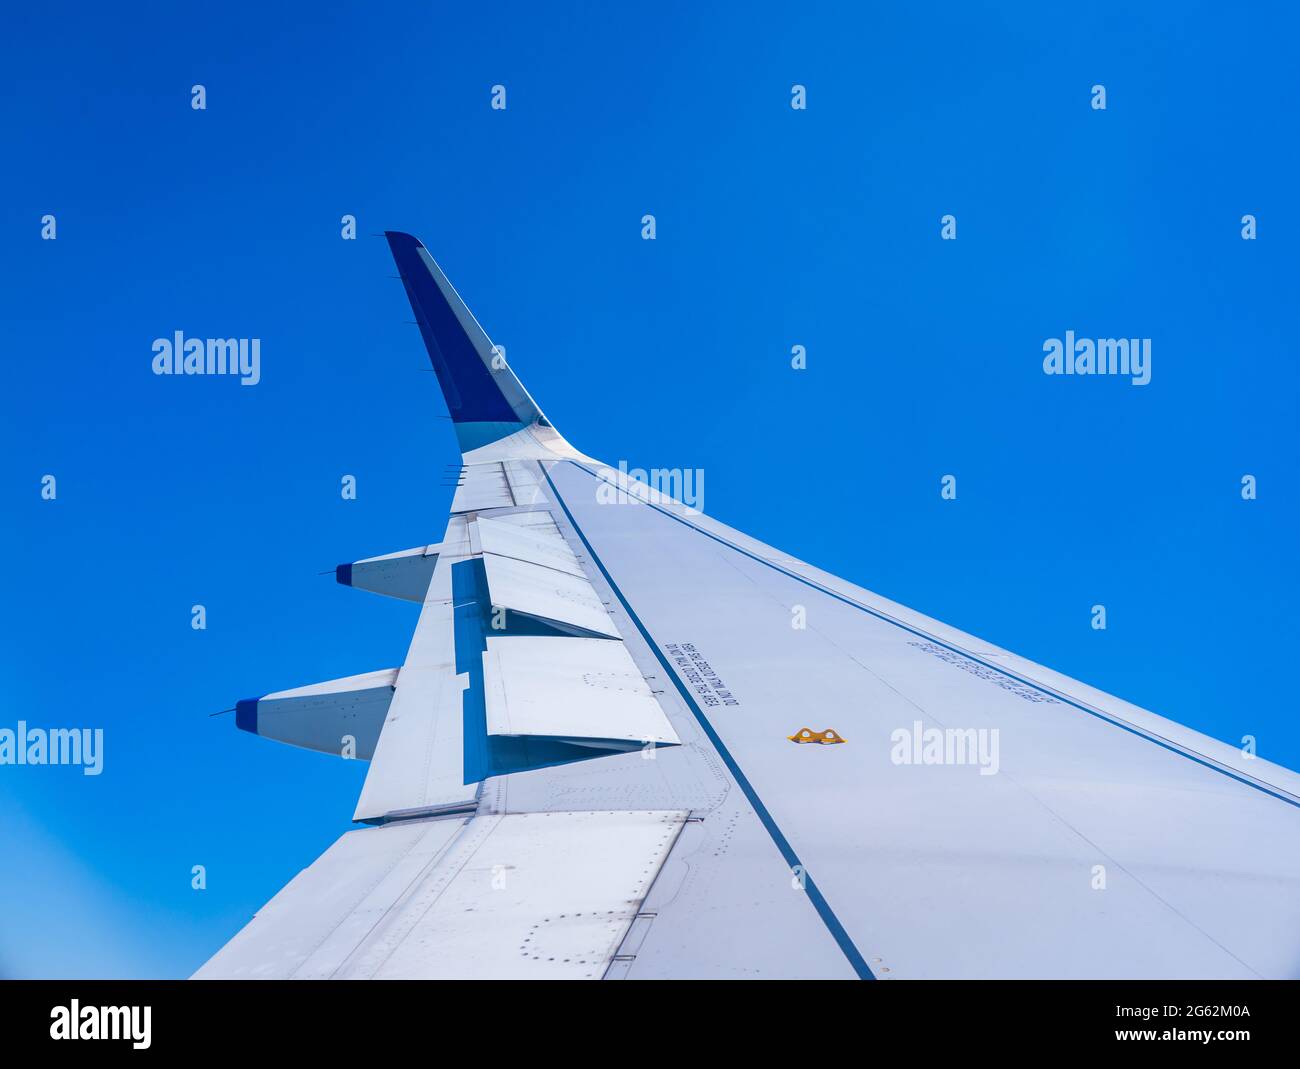 Eine Flugzeugflügelansicht mit ausgeklappten Klappen. Blauer Himmel im Hintergrund. Stockfoto